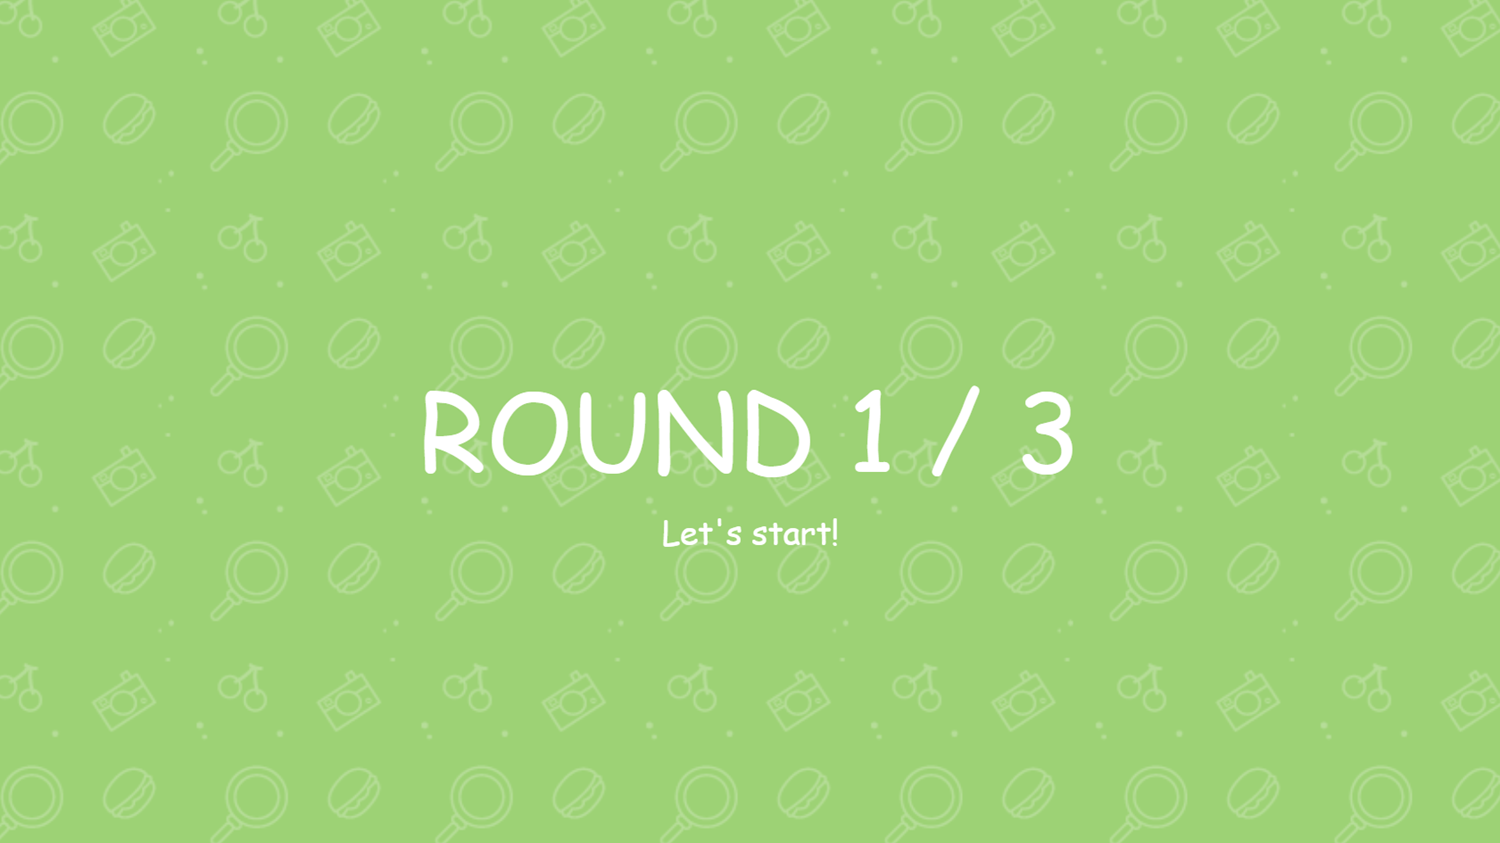 Find Hidden Object Game Round Start Screenshot.